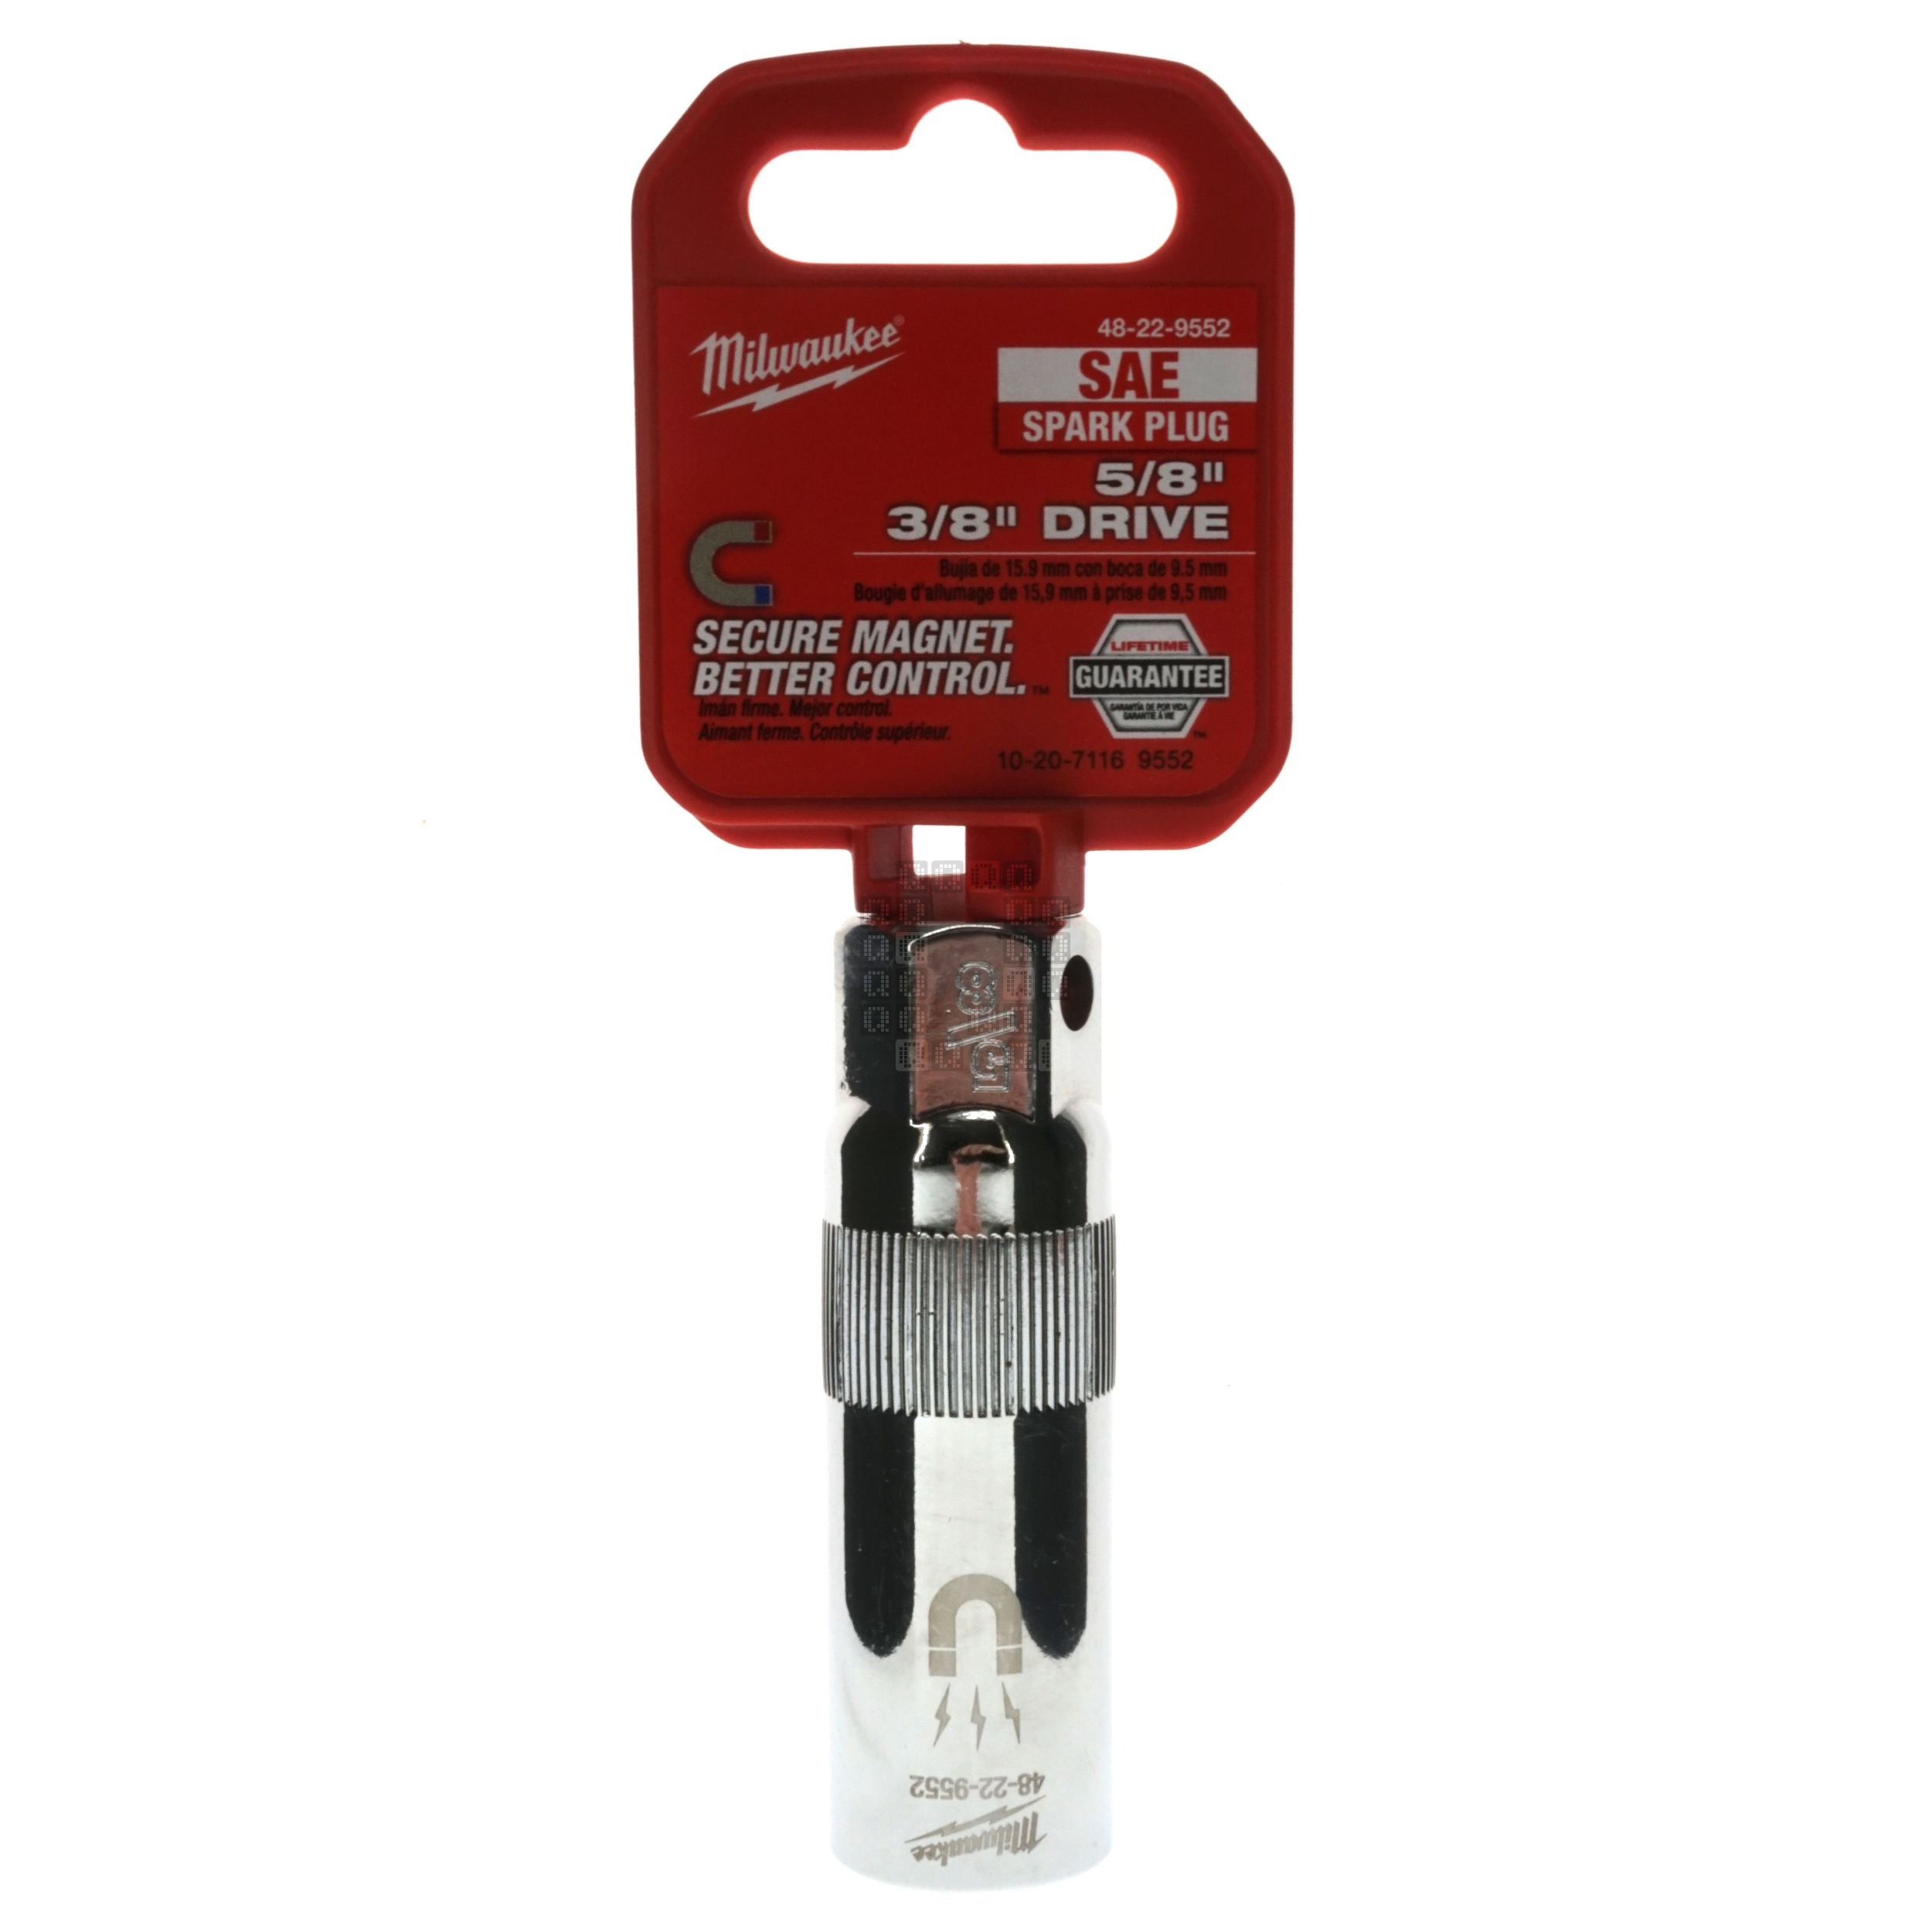 Milwaukee Tool 48-22-9552 3/8" Drive 5/8" Magnetic Spark Plug Chrome Socket SAE